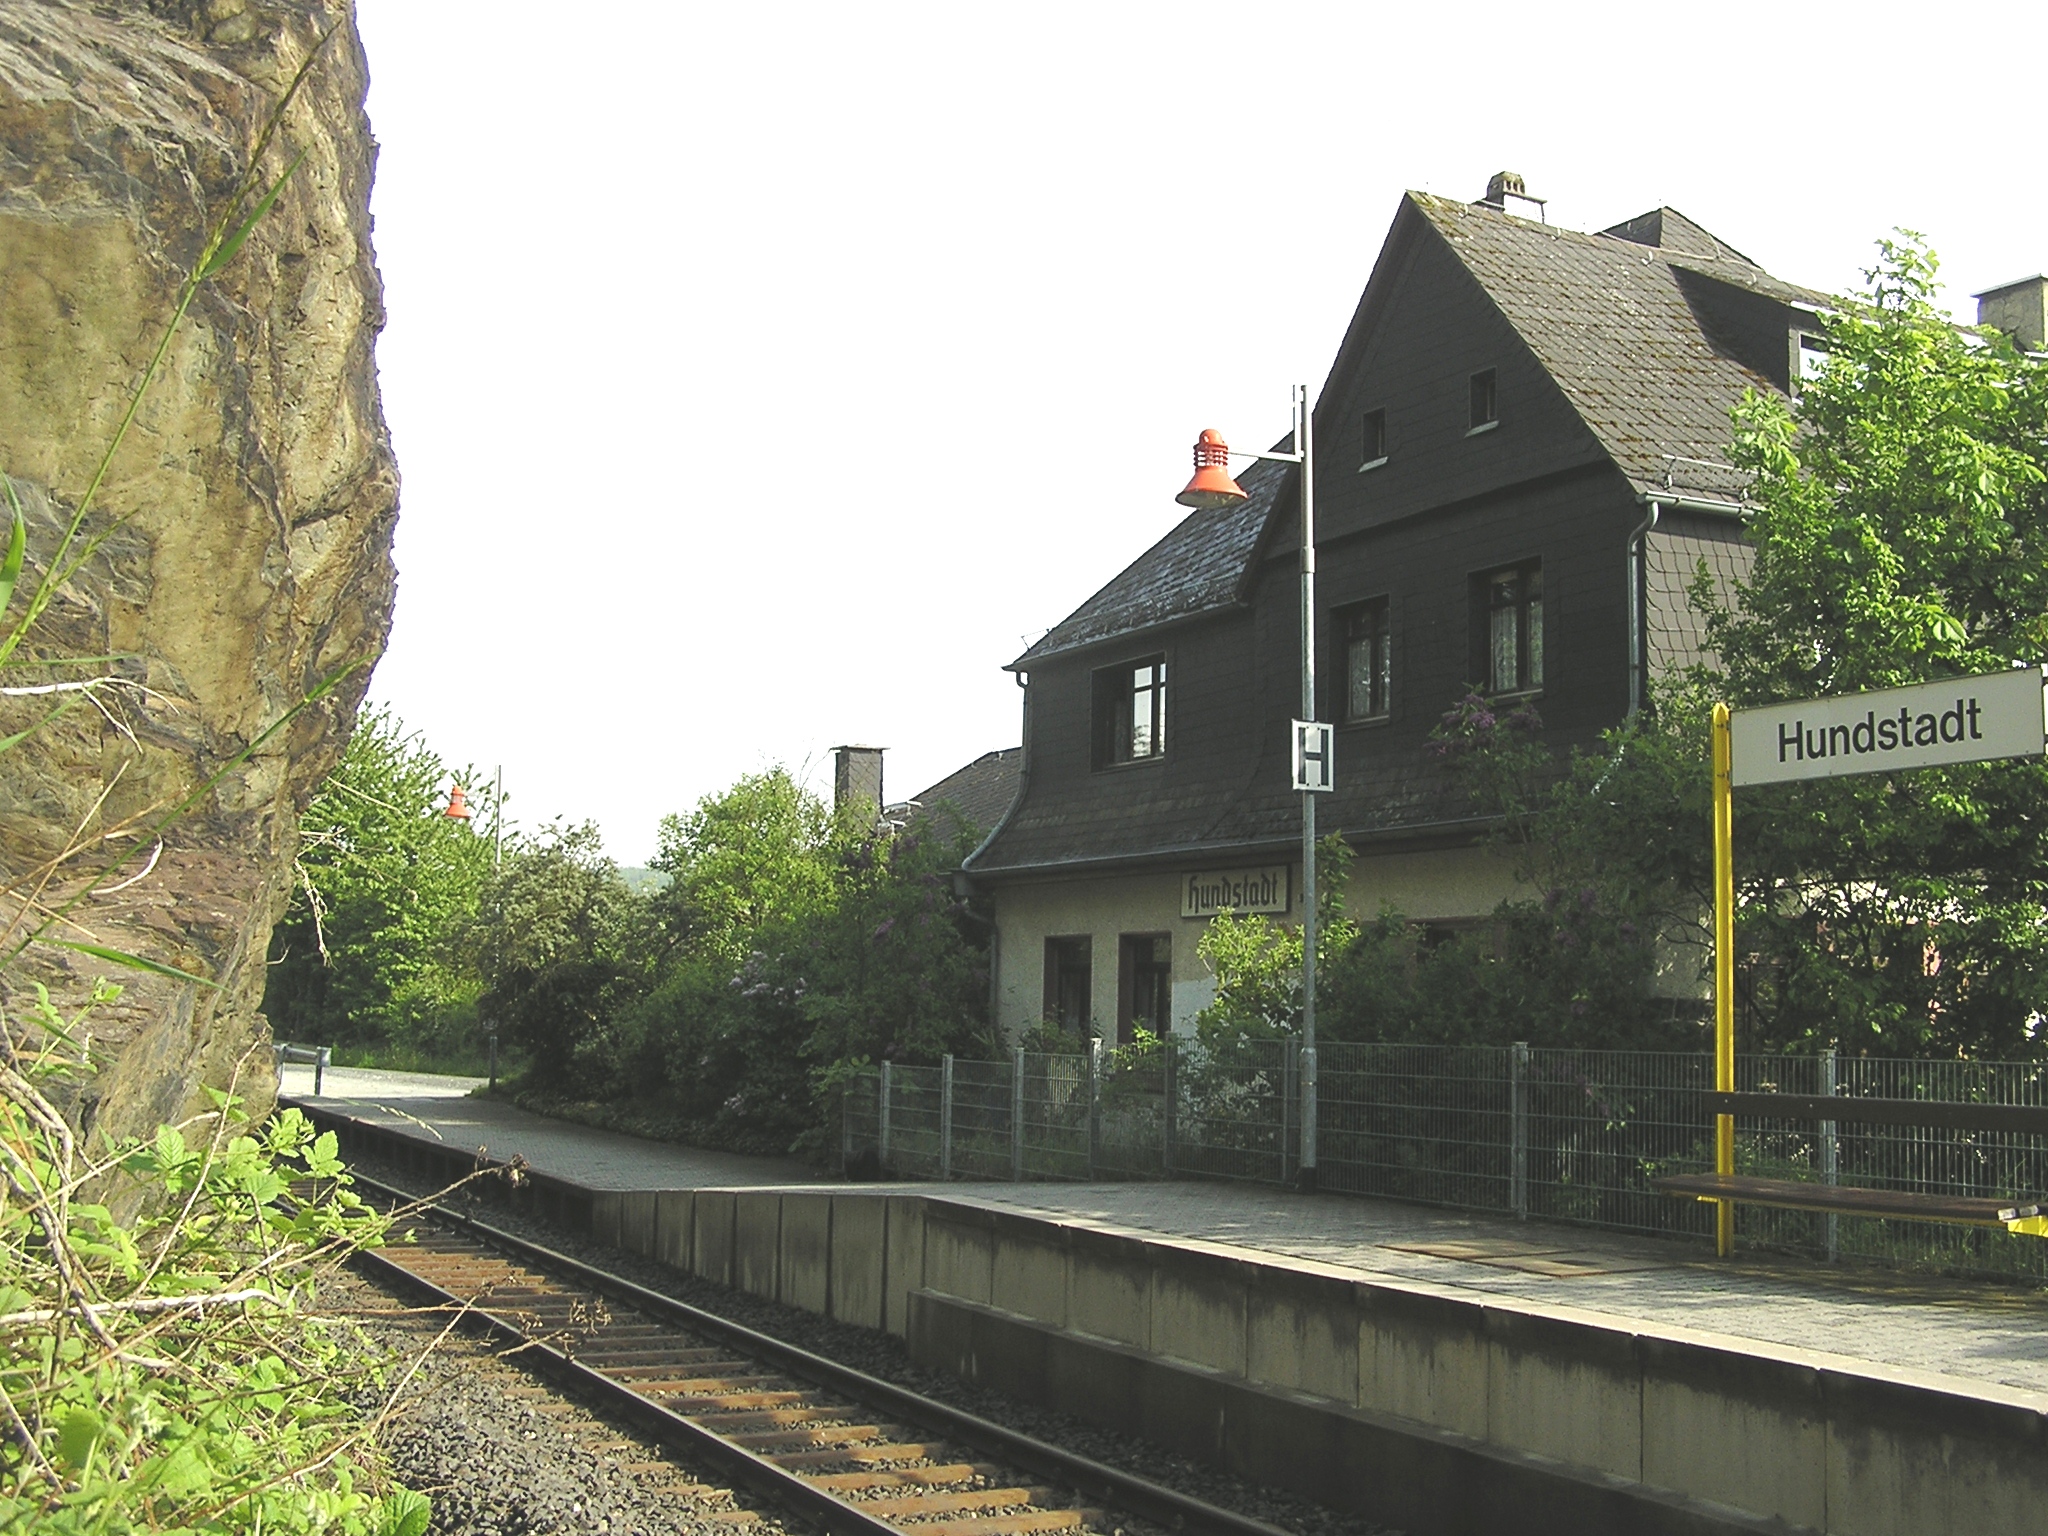 Bahnhof Hundstadt vom Fels aus gesehen - nicht ganz ungefhrlich, da rutschig und Teil der Gleisanlage...